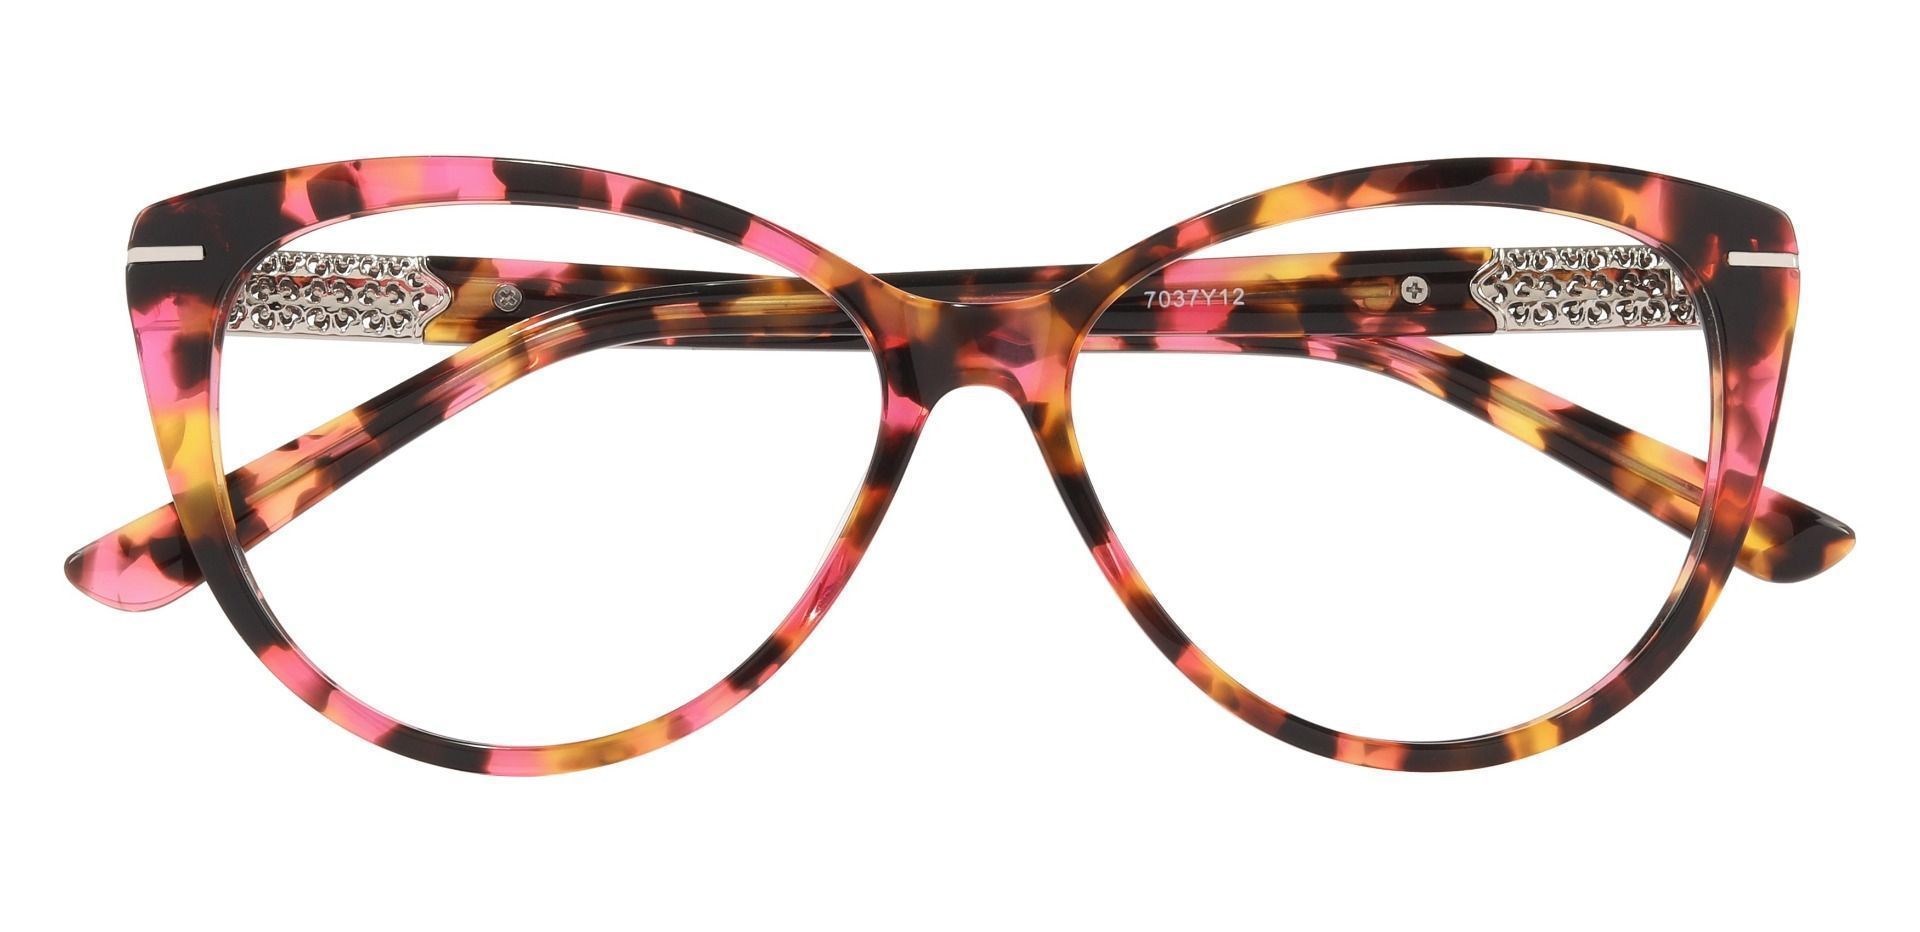 Canberra Cat Eye Prescription Glasses - Floral